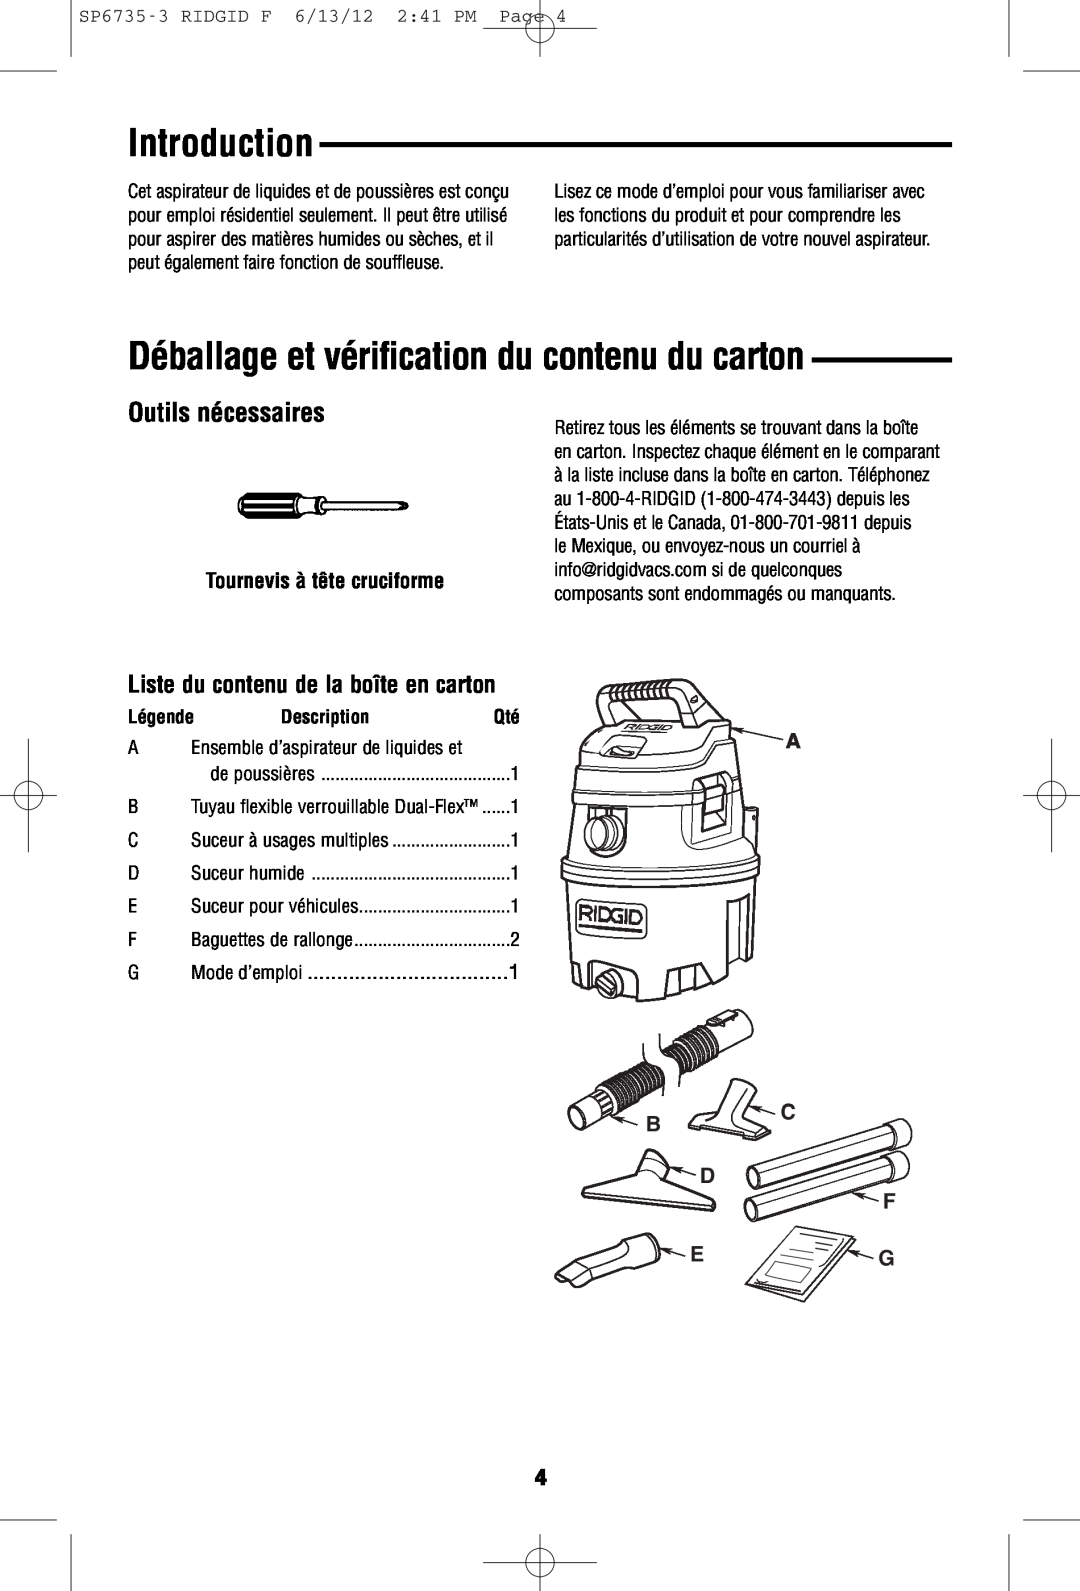 RIDGID WD14500 owner manual Déballage et vérification du contenu du carton, Outils nécessaires, Introduction, Description 